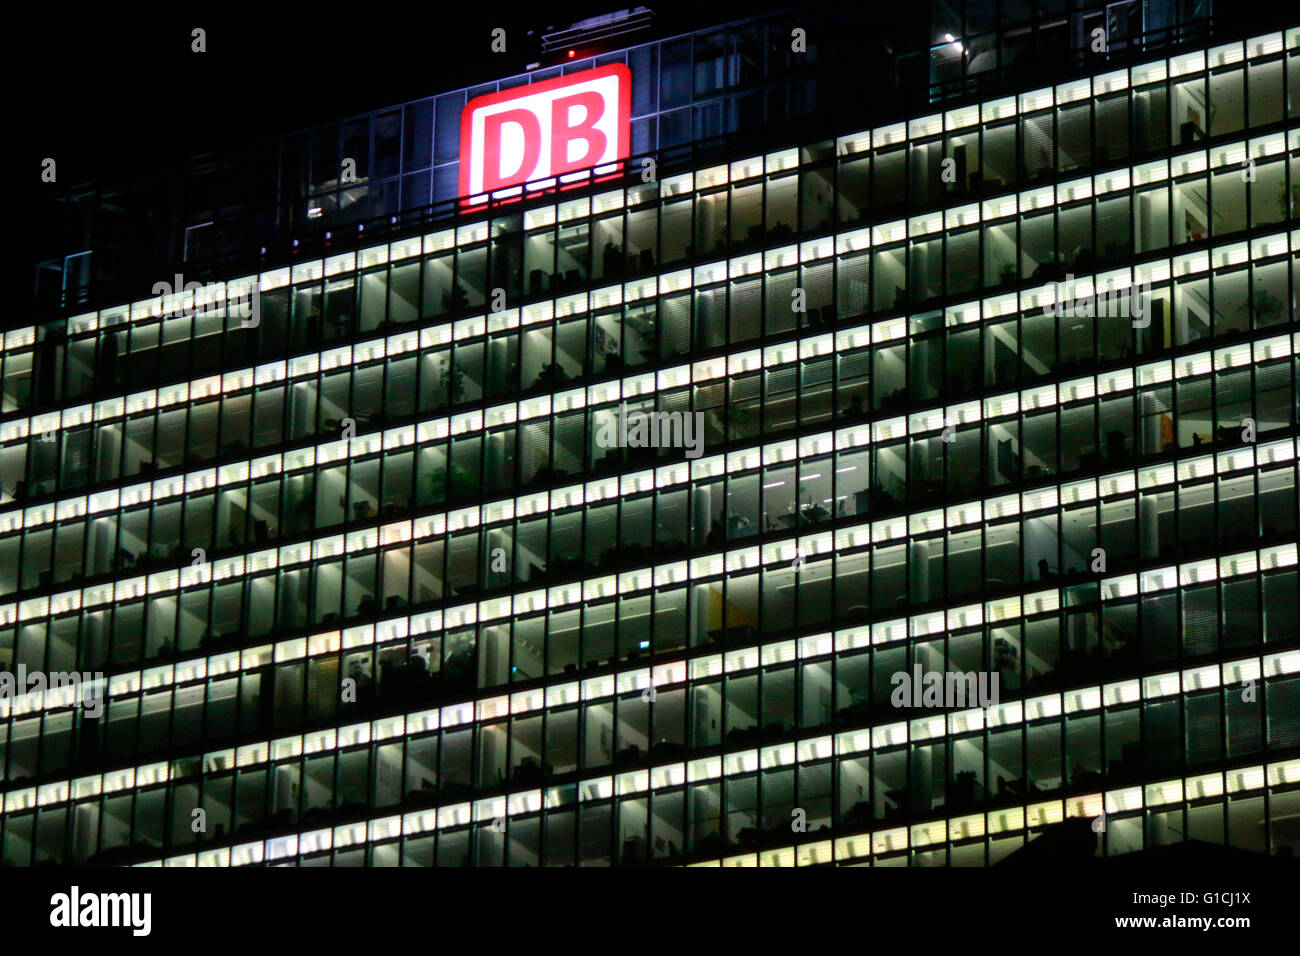 das Logo der Marken 'Db Deutsche Bahn', Berlin. Stock Photo